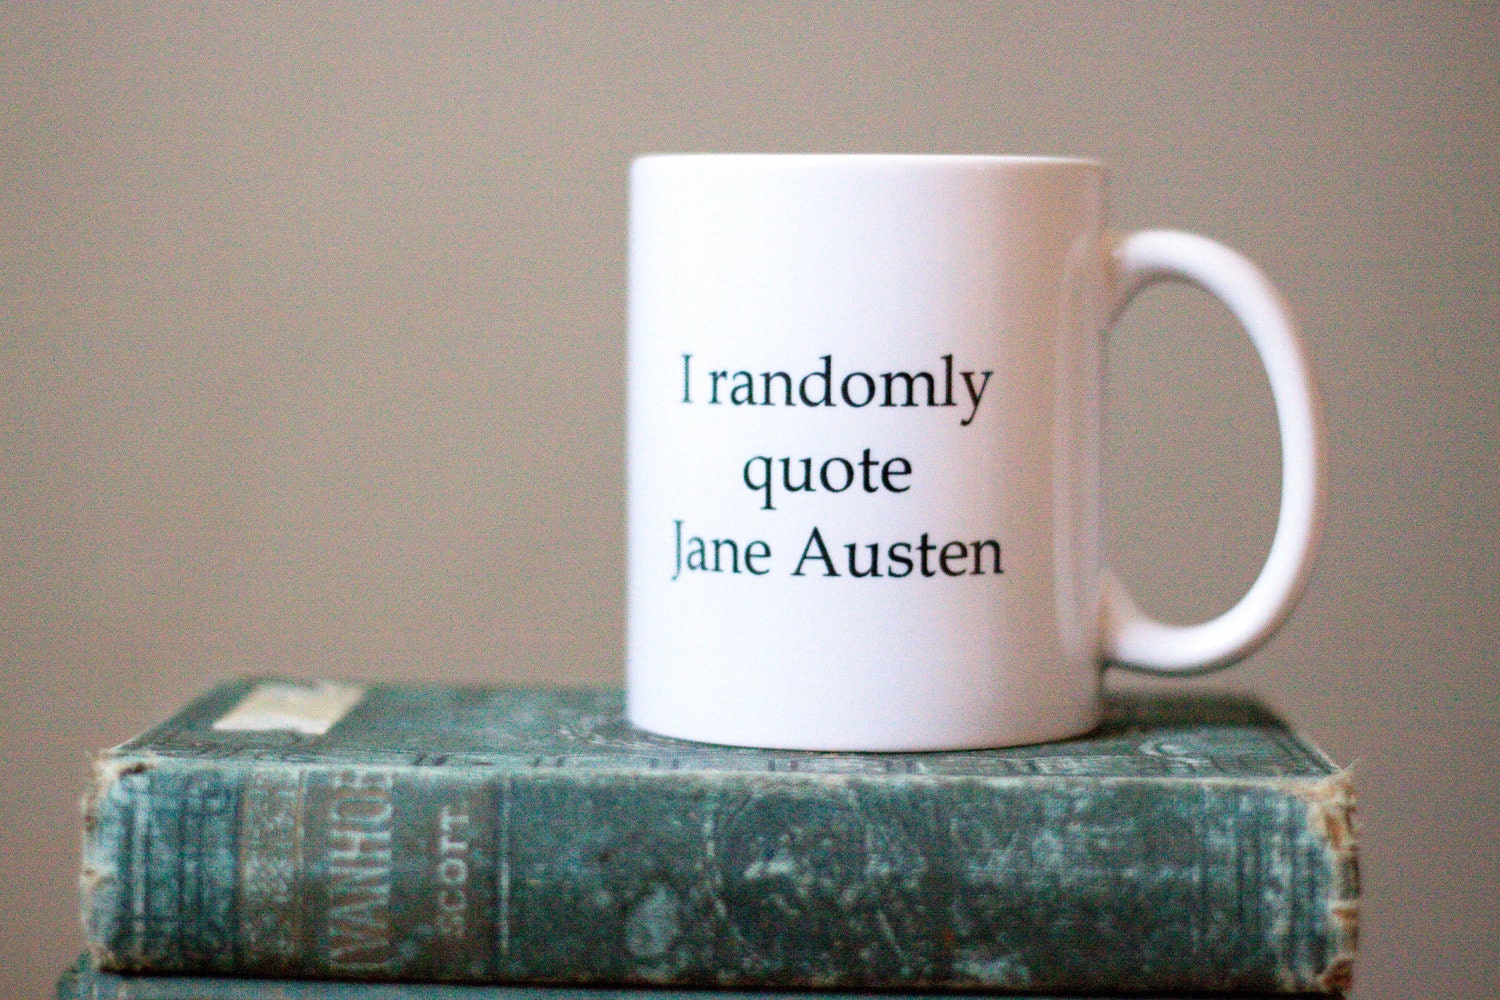 I randomly quote... Jane Austen.... coffee cup